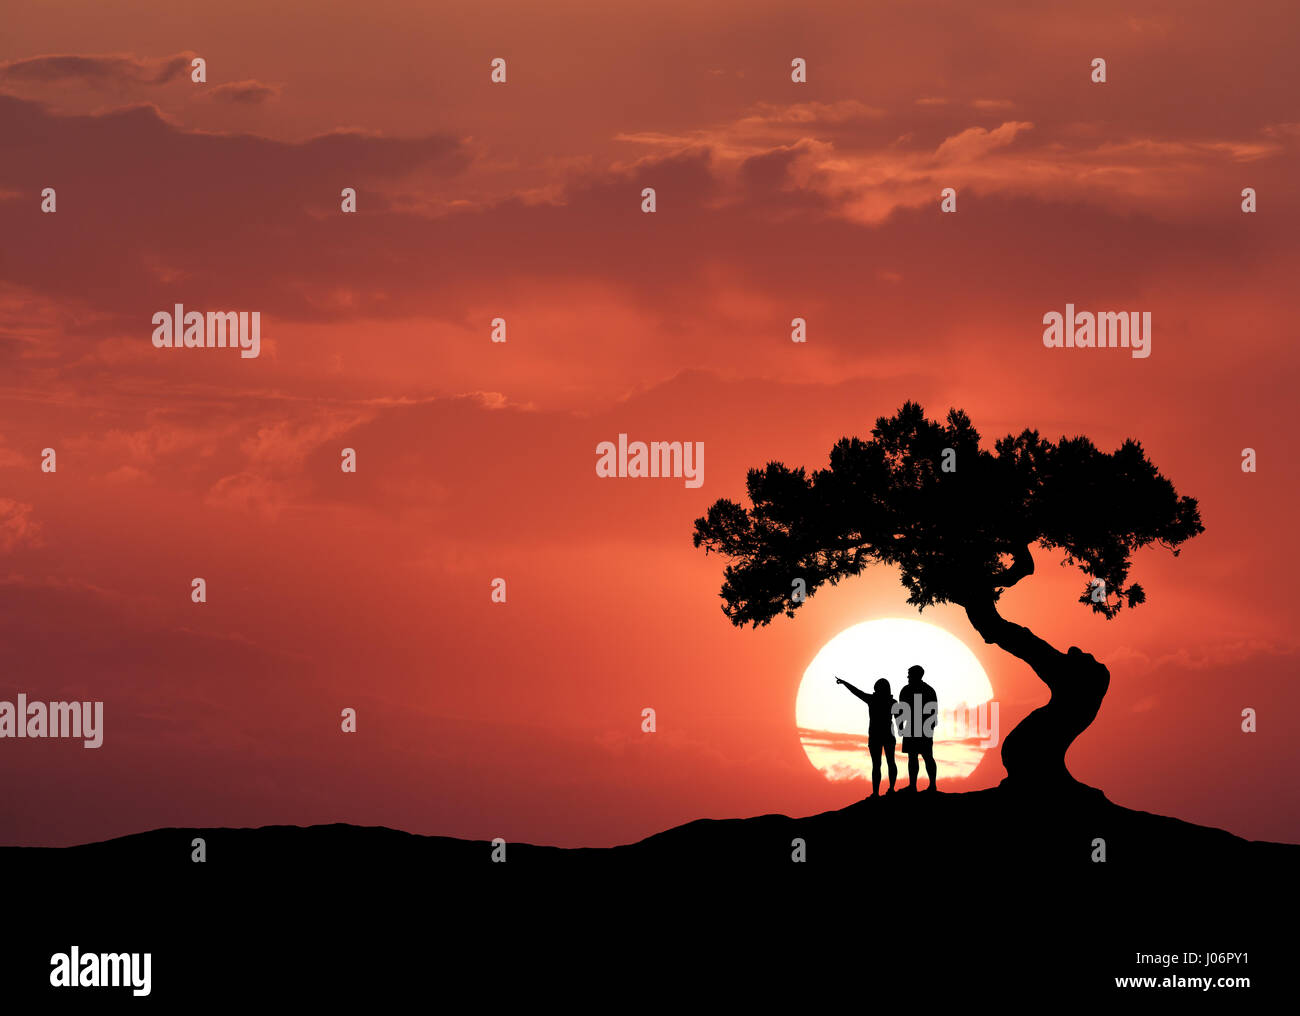 Le persone sotto l'albero storto sullo sfondo di sun. Silhouette di una coppia permanente sulla montagna, albero e colorato red sky con nuvole a suns Foto Stock